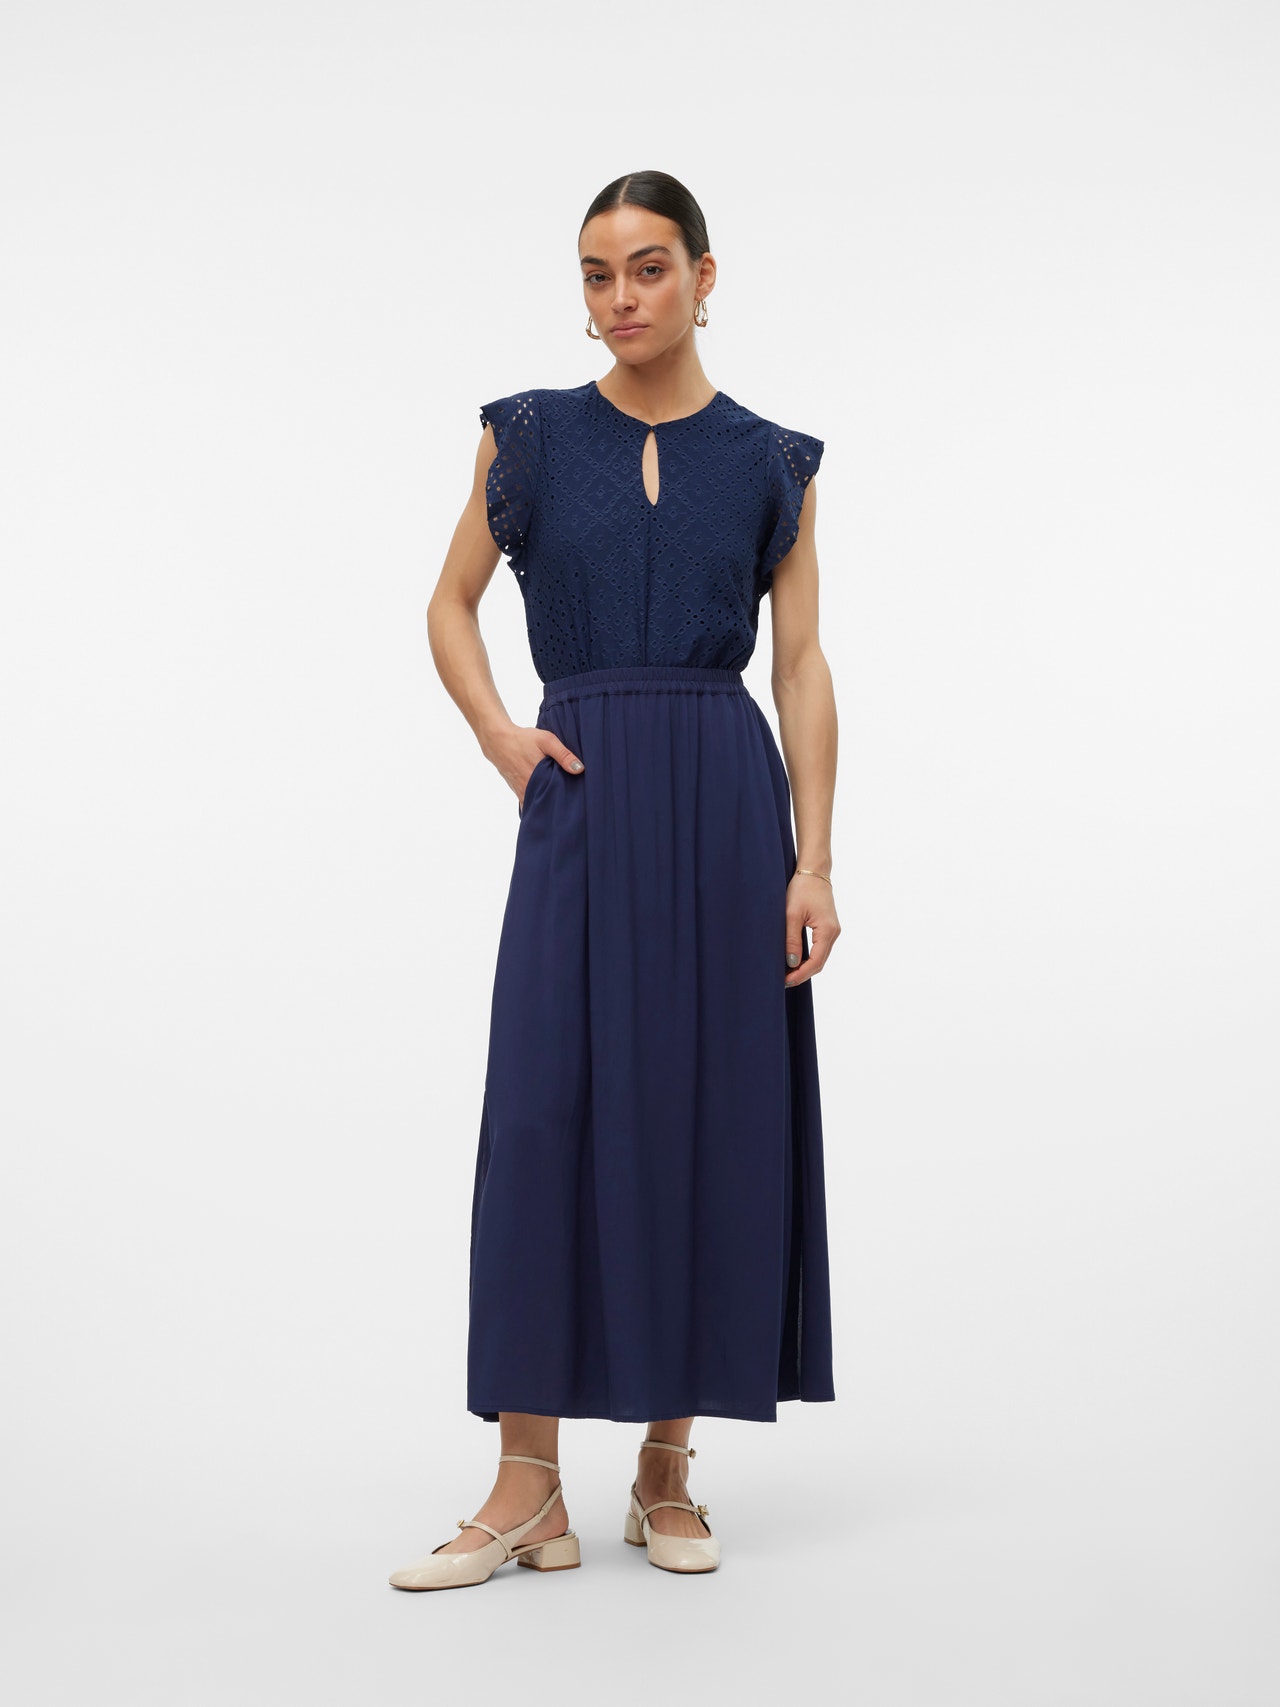 Vero Moda VMEASY Lång kjol -Navy Blazer - 10302047